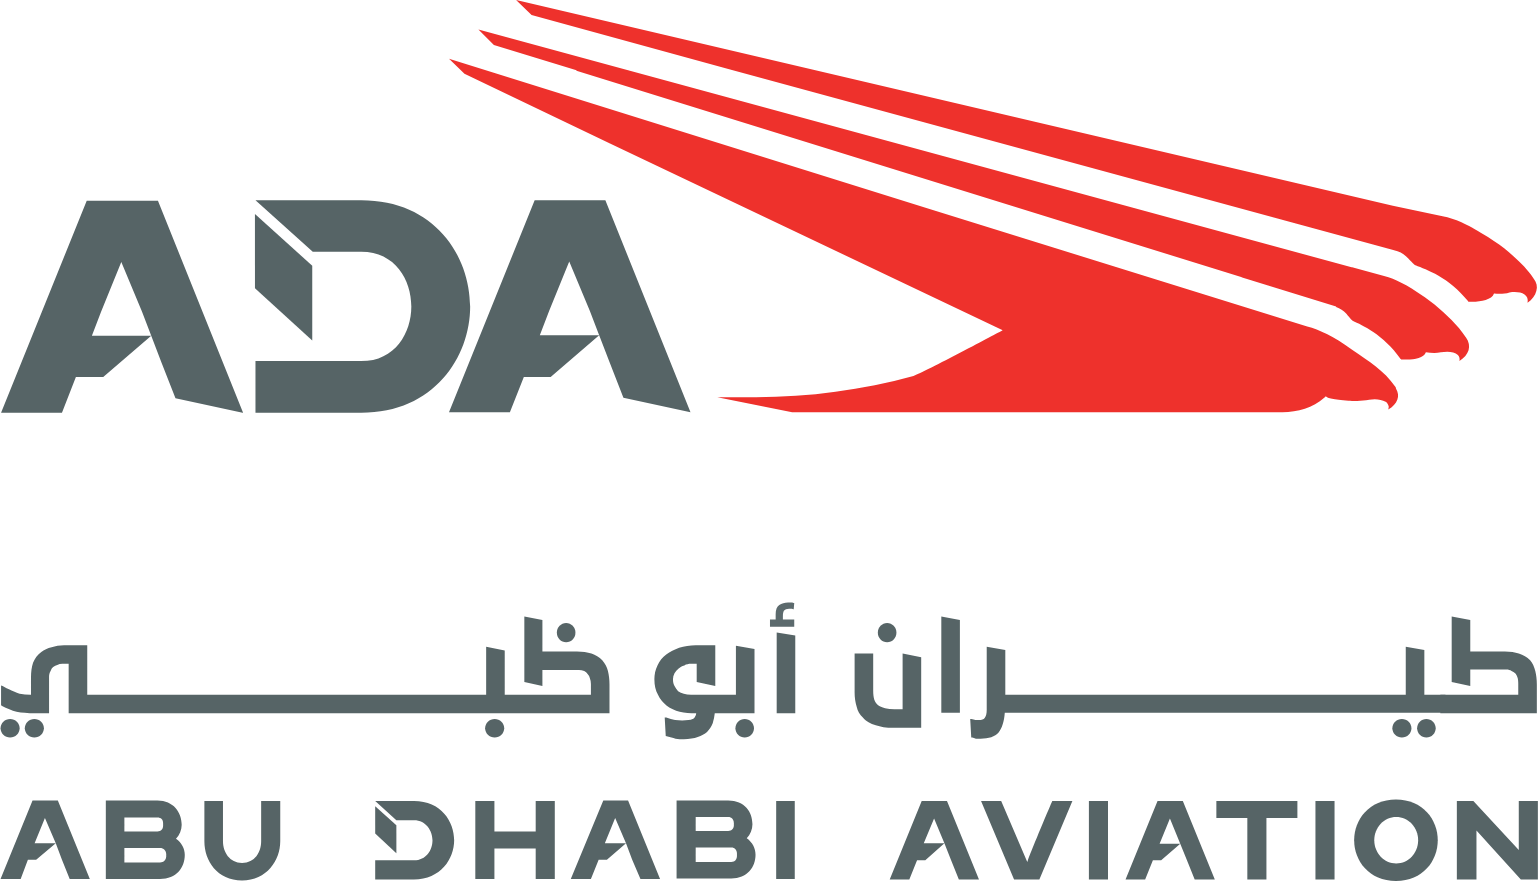 Abu Dhabi Aviation logo large (transparent PNG)